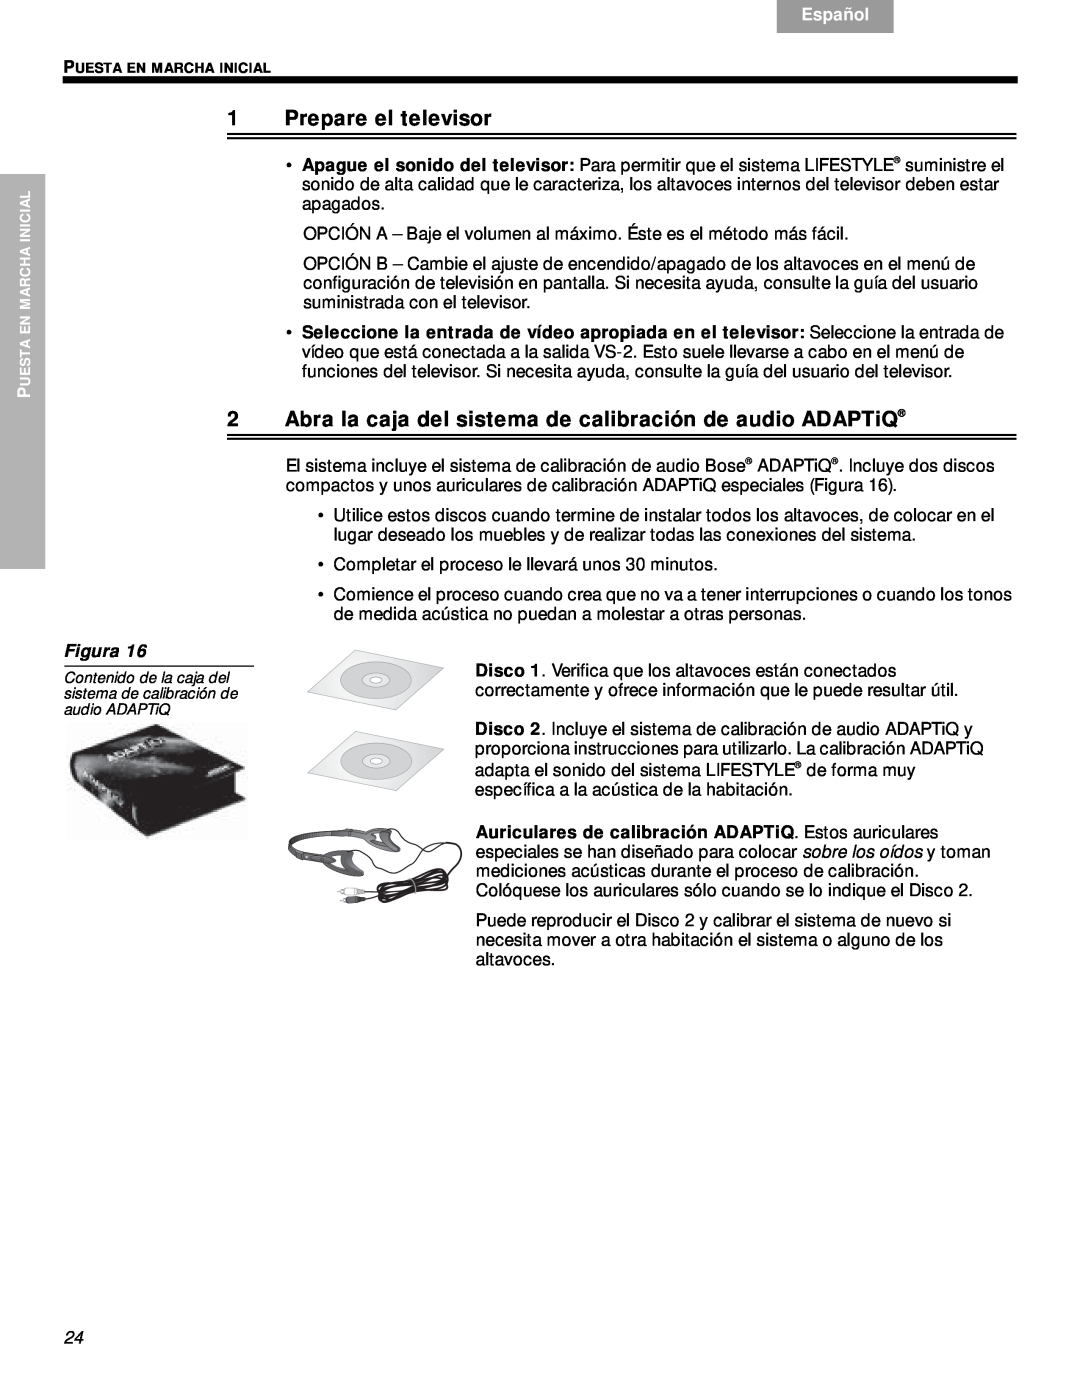 Bose VS-2 manual 1Prepare el televisor, Svenska, Nederlands, Français, Español, English, Figura 